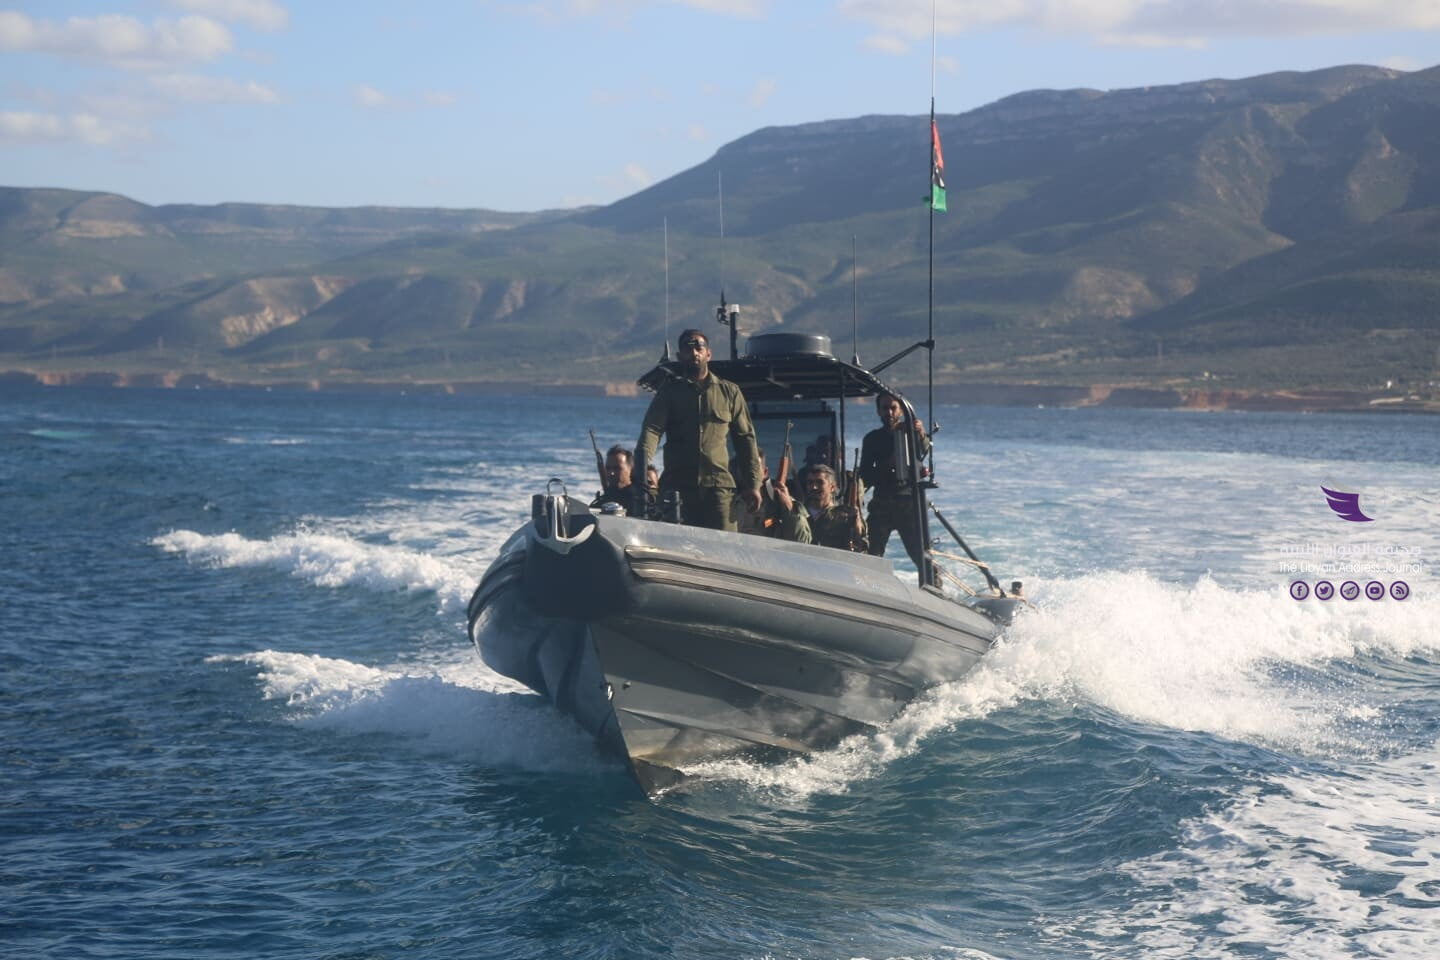 البحرية المقاتلة سوسة تضبط باخرة تحمل العلم الجمايكي قادمة من تركيا باتجاه مصراتة - 130187867 143751477182717 5432930140235754594 n